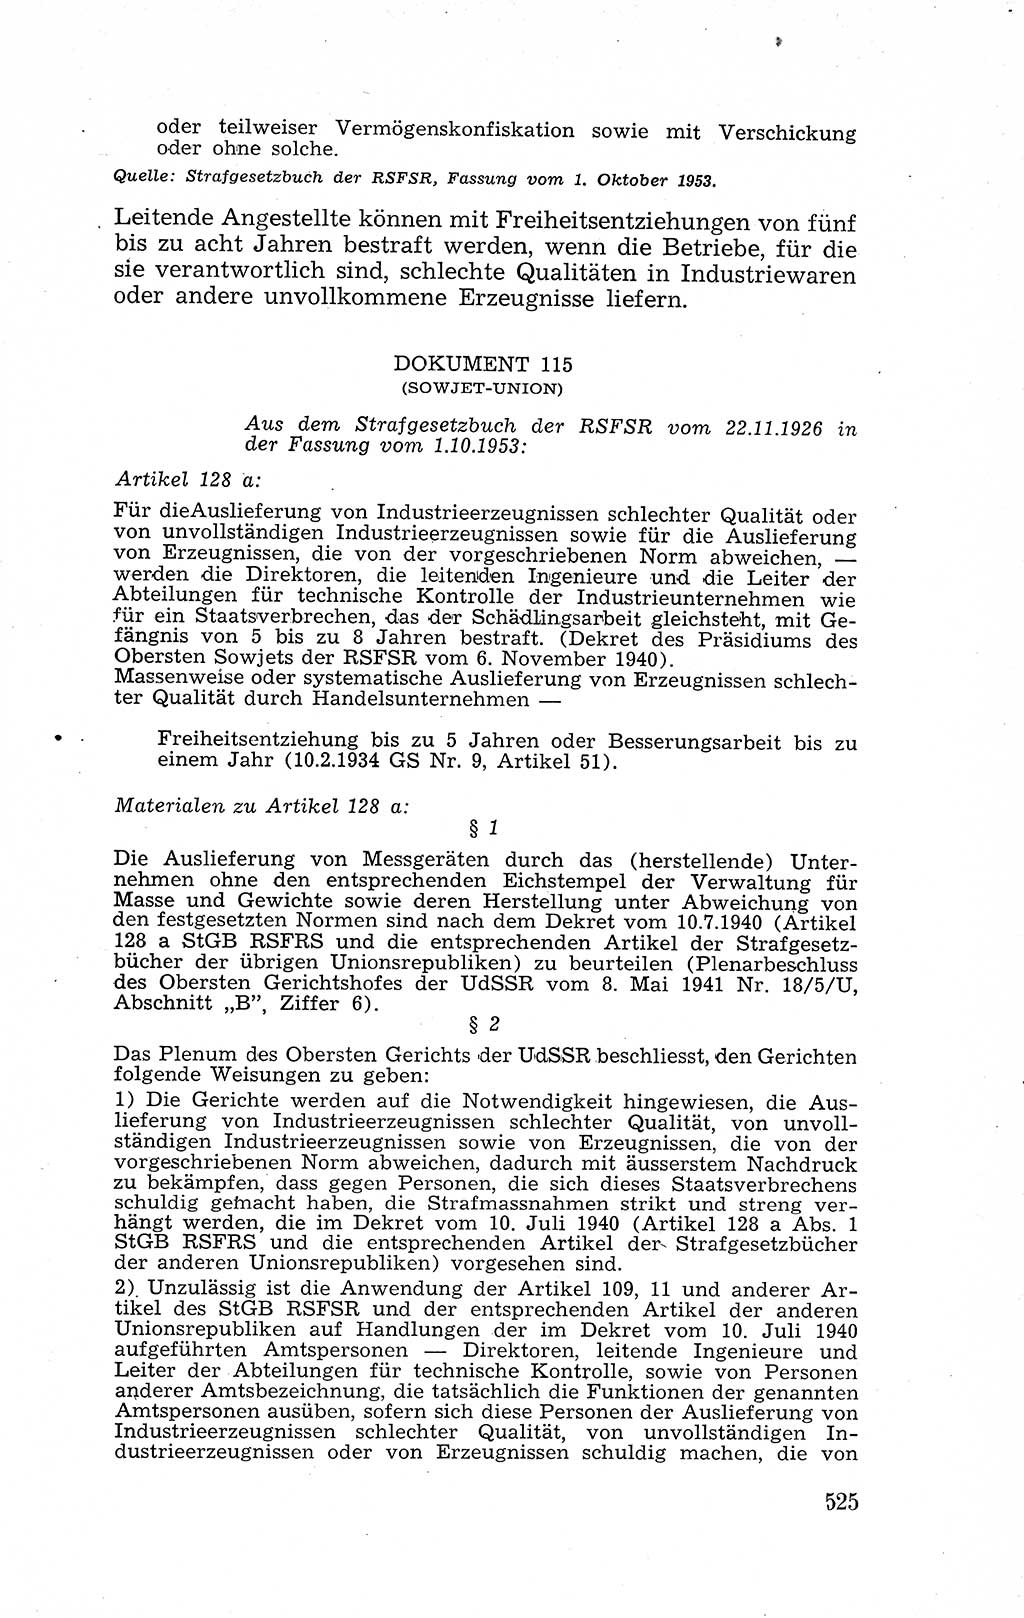 Recht in Fesseln, Dokumente, Internationale Juristen-Kommission [Bundesrepublik Deutschland (BRD)] 1955, Seite 525 (R. Dok. IJK BRD 1955, S. 525)